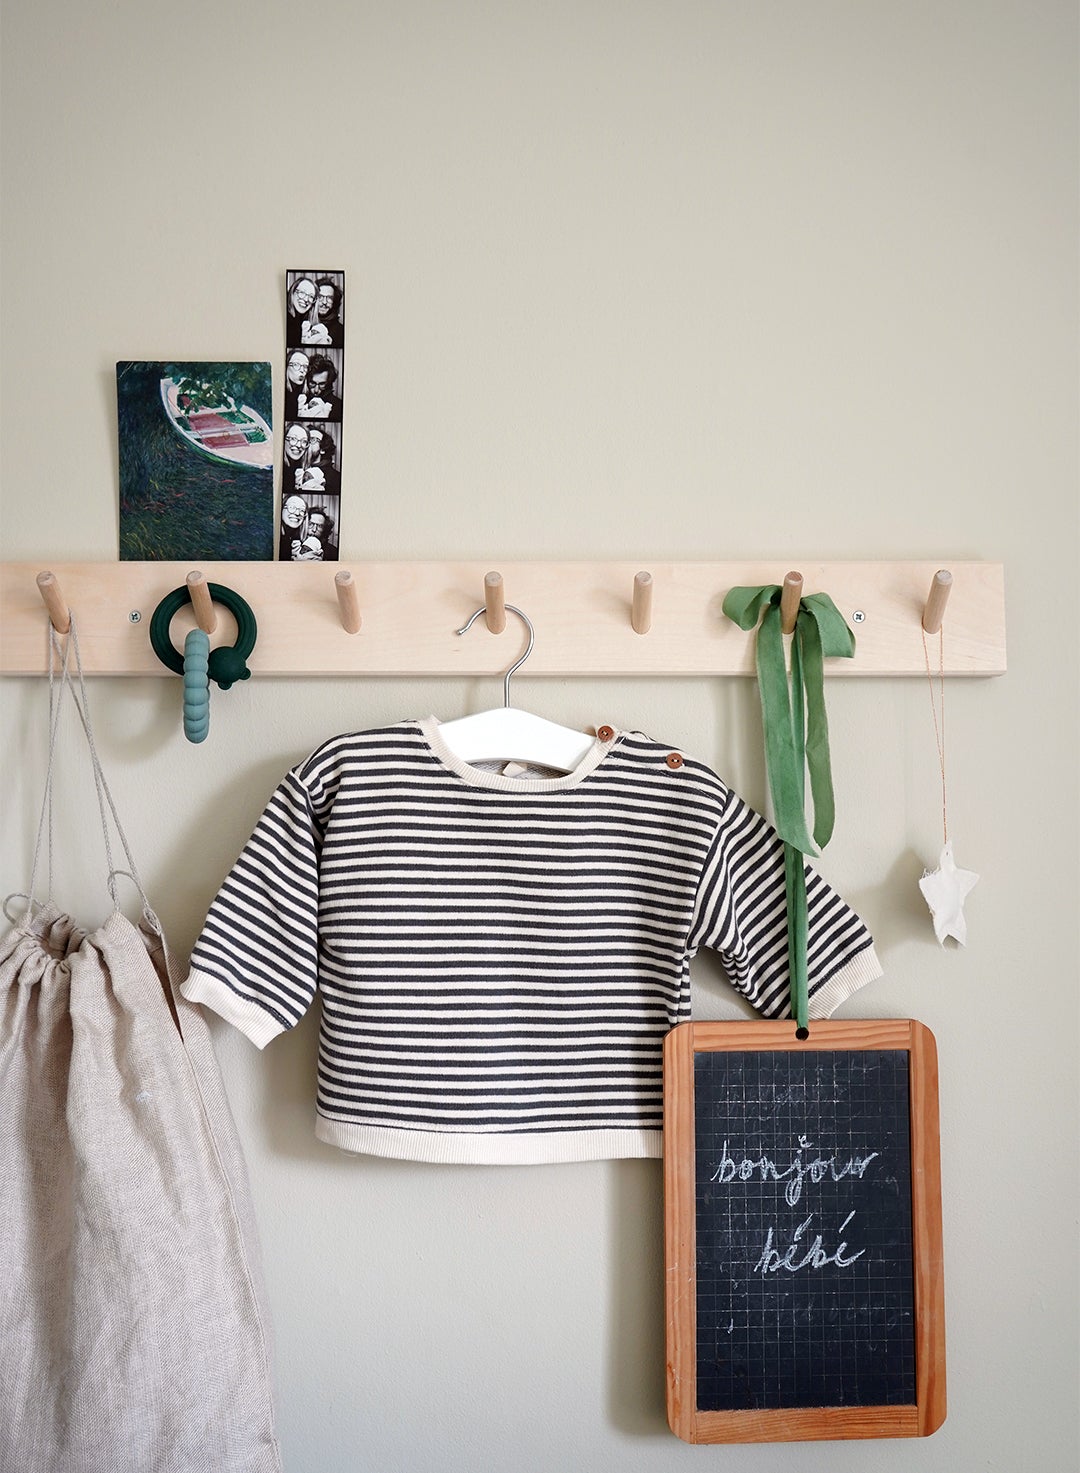 wood peg rail with kid’s shirt and mini chalkboard